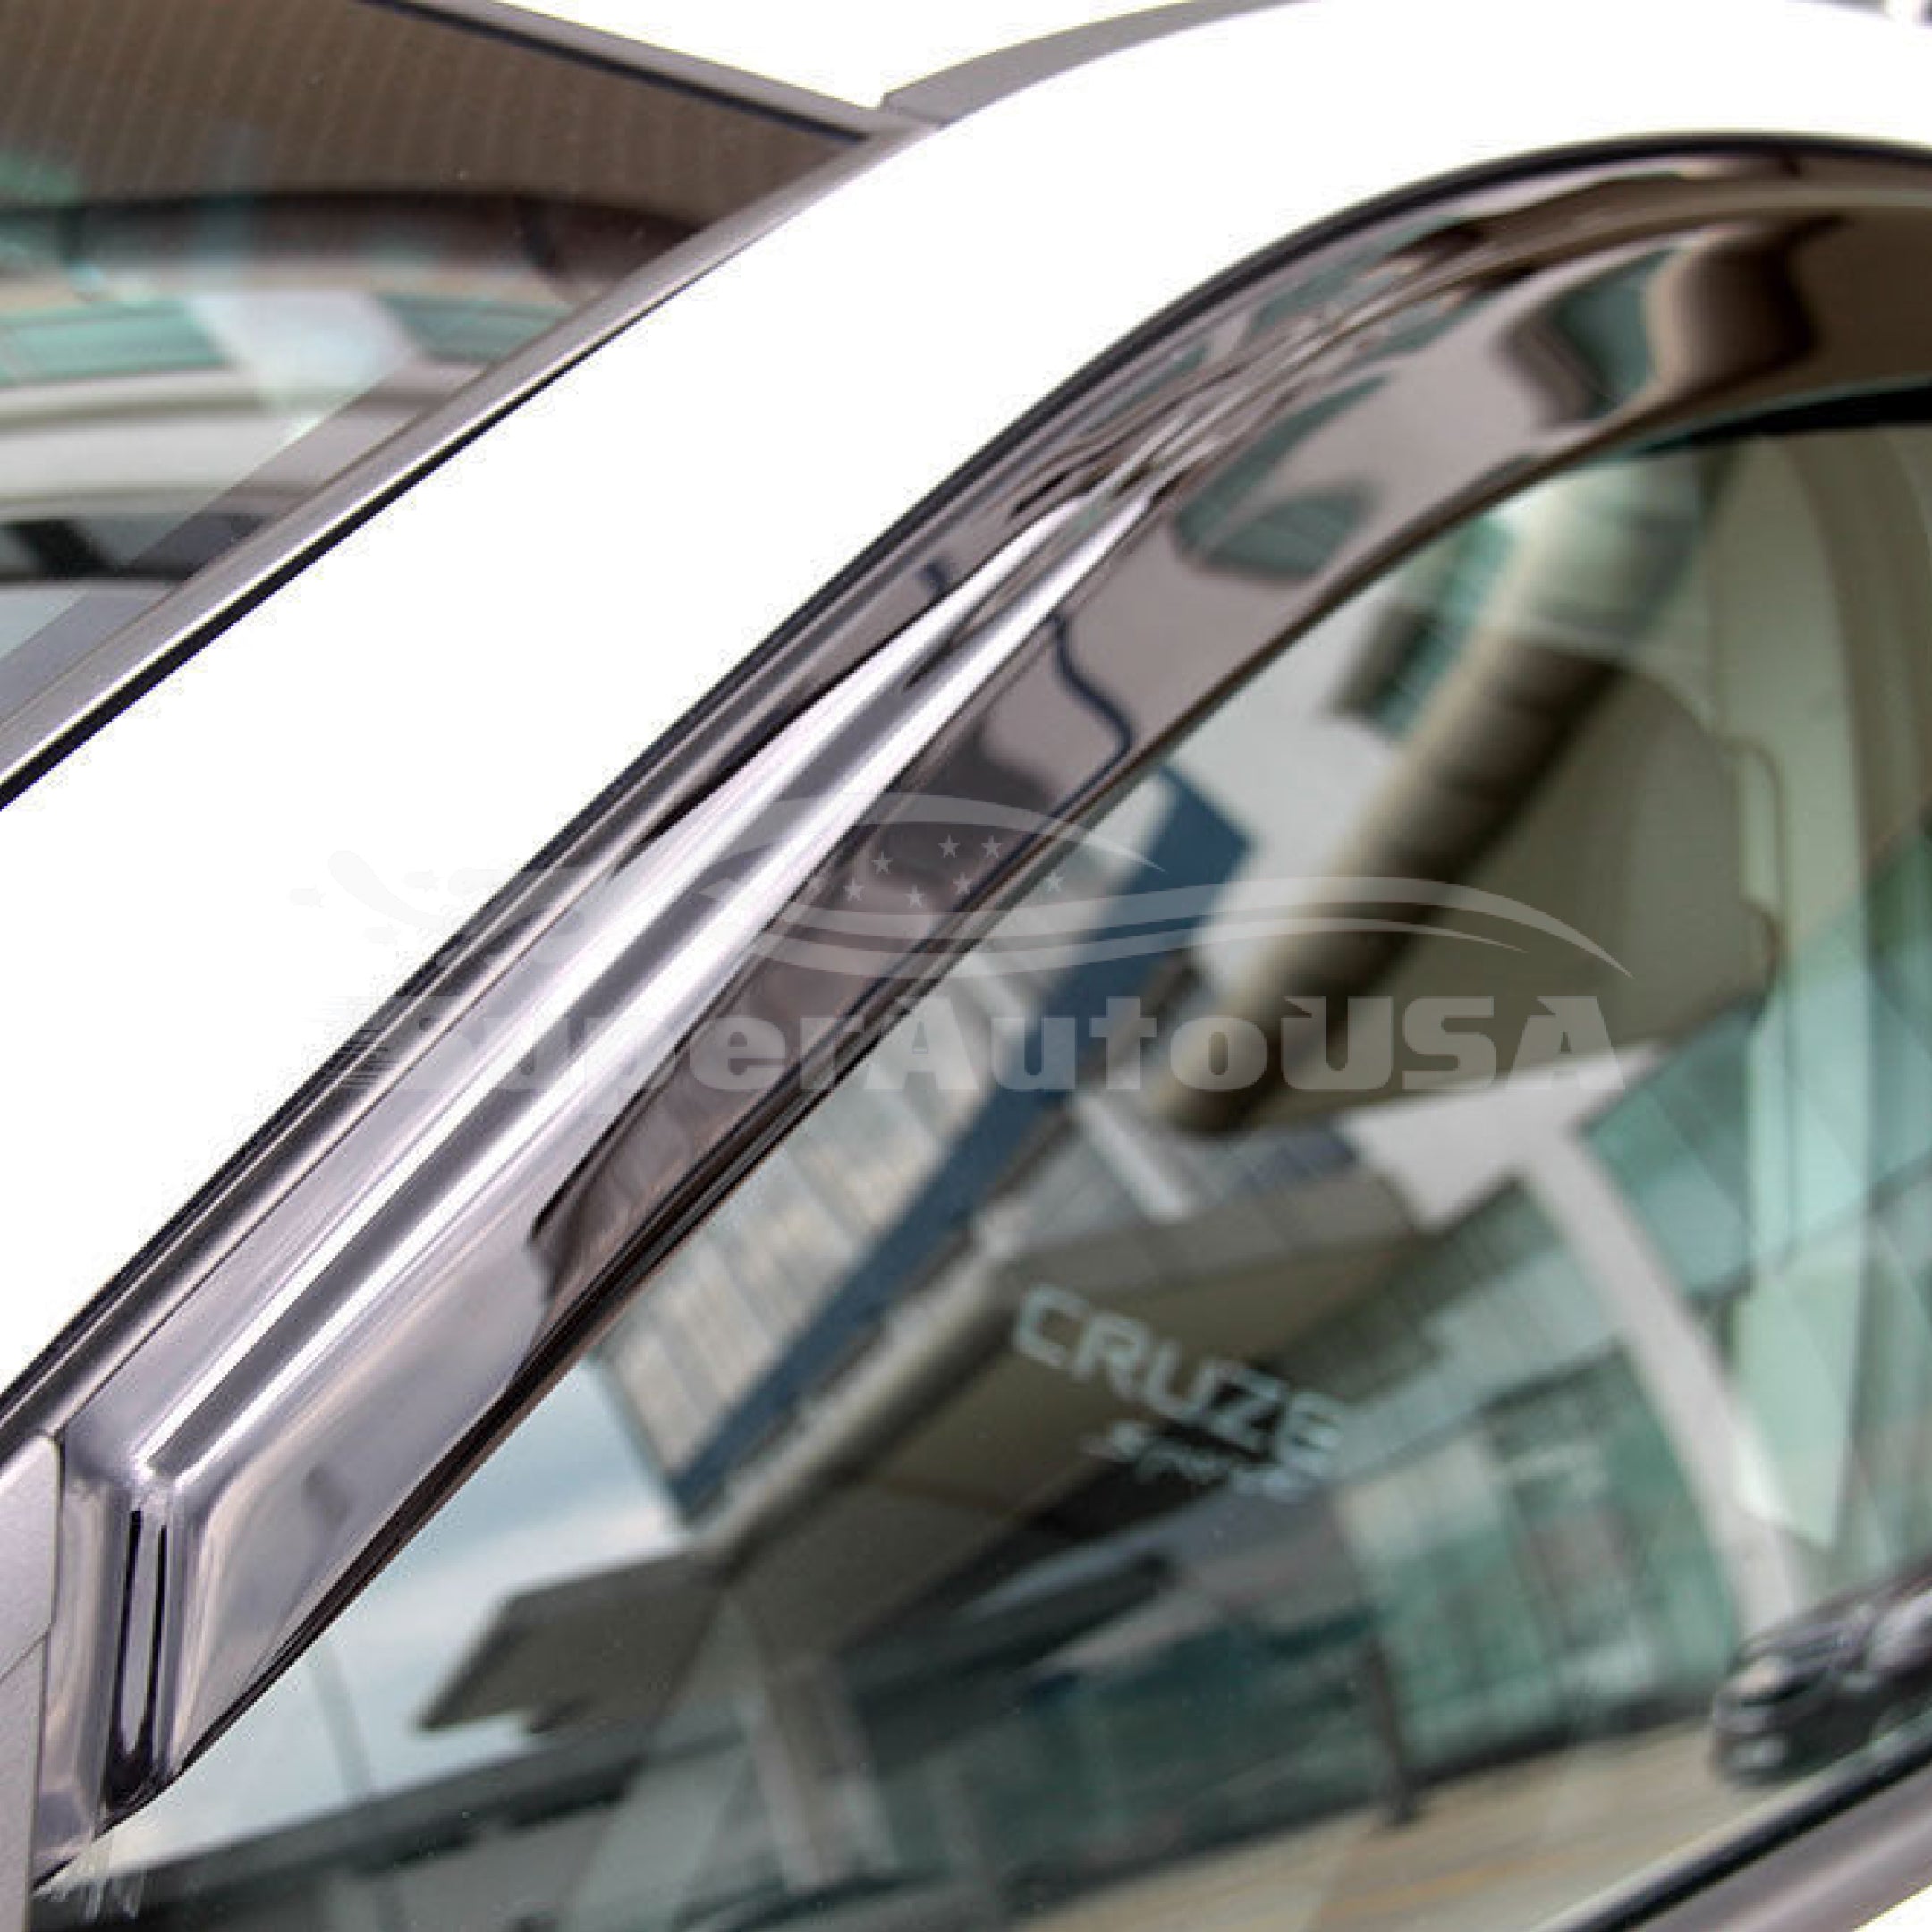 Compatible con Dodge Charger 2011-2021 estilo OE, viseras de ventana de ventilación, protectores de viento y lluvia, deflectores de sombra. - 0